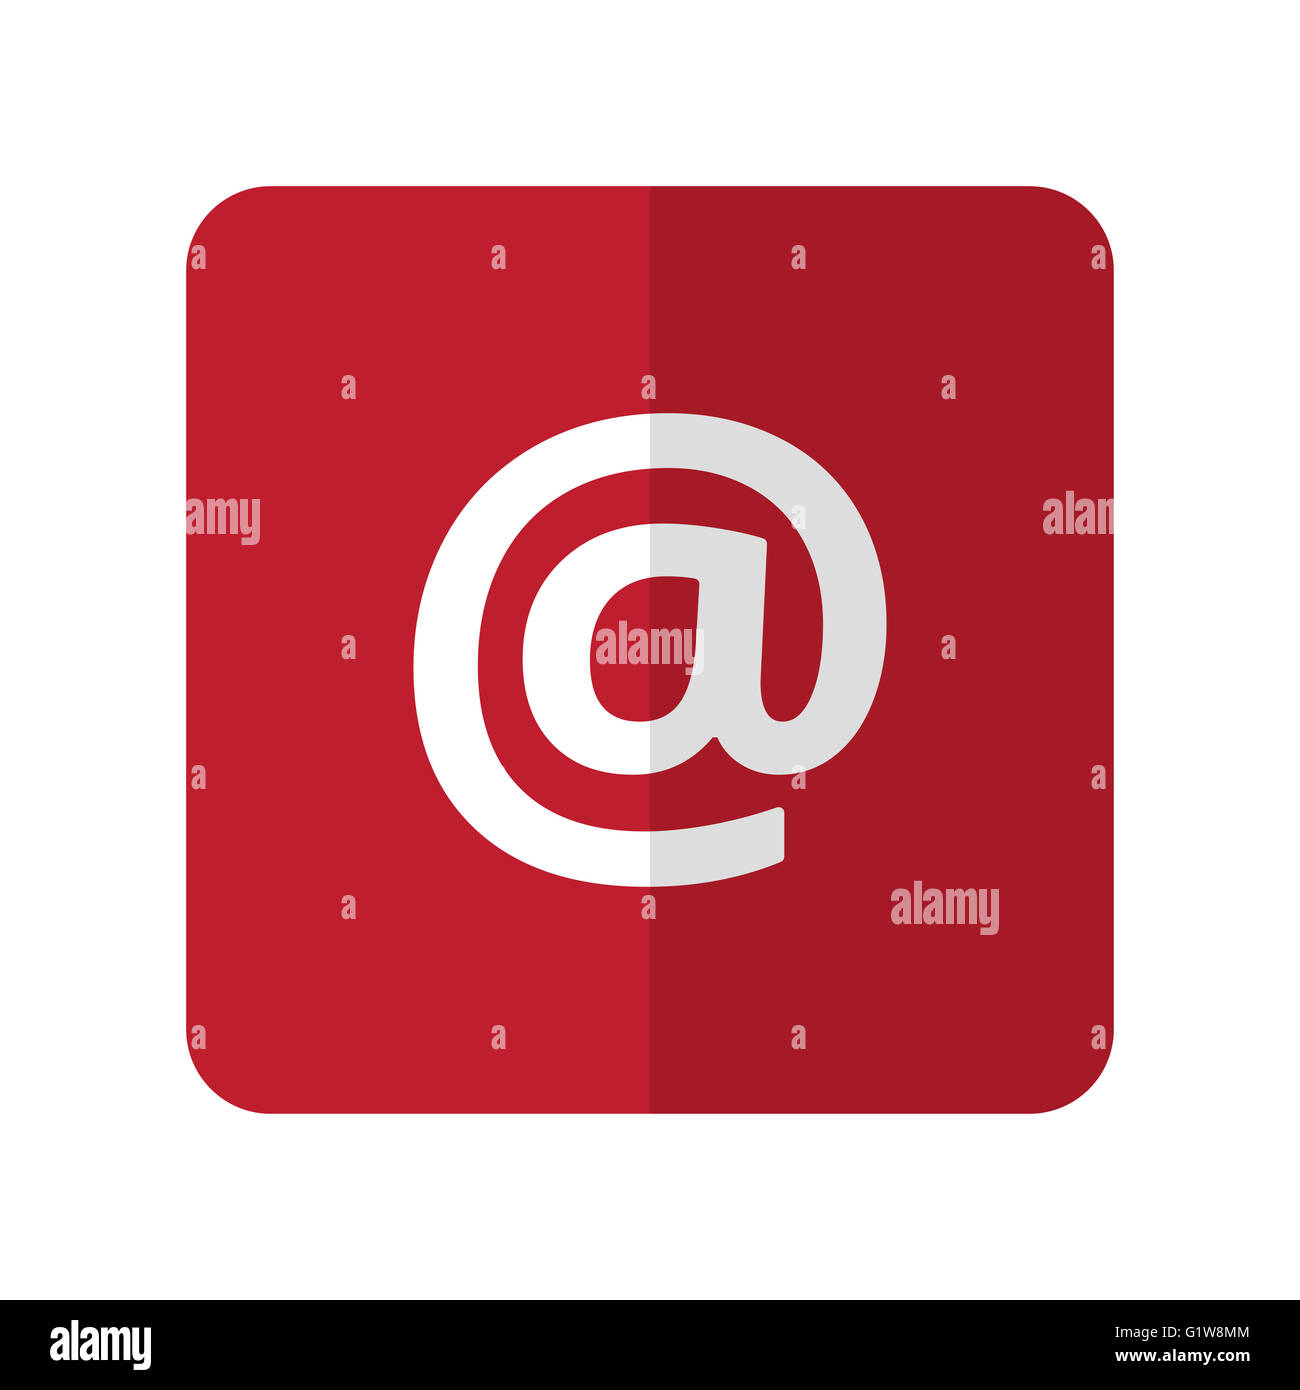 E-Mail blanc à plat sur l'icône carré arrondi rouge sur blanc Banque D'Images